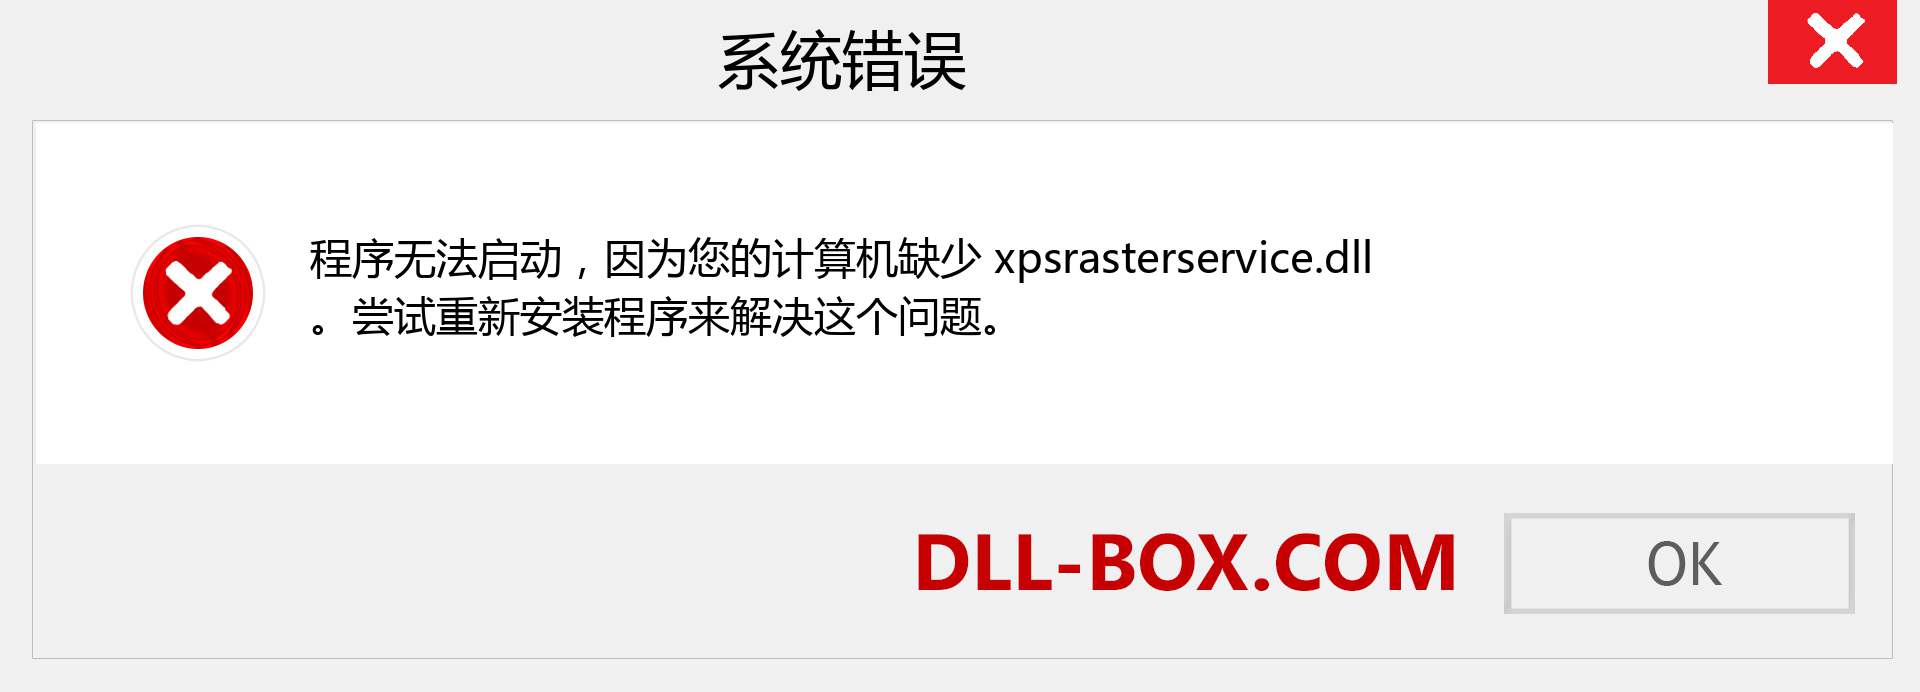 xpsrasterservice.dll 文件丢失？。 适用于 Windows 7、8、10 的下载 - 修复 Windows、照片、图像上的 xpsrasterservice dll 丢失错误